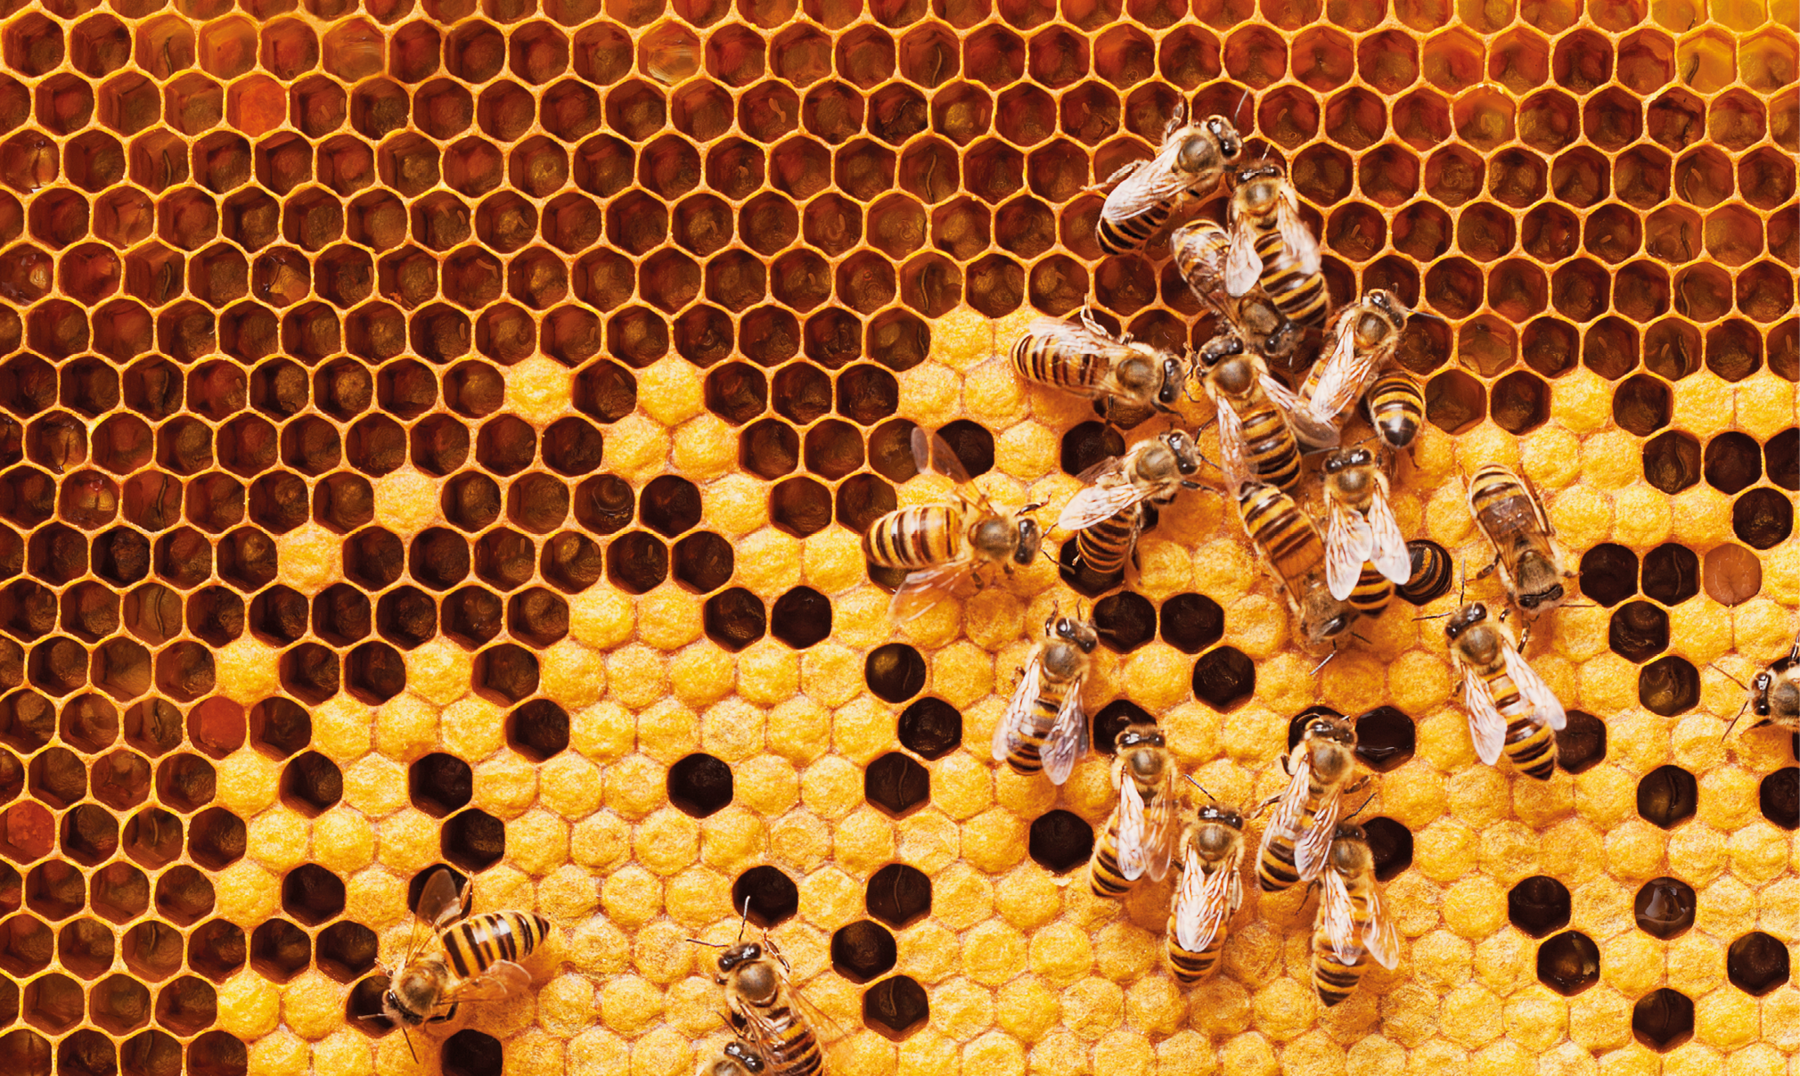 Fotografia. Foto retangular que mostra favo de mel com figuras que se parecem hexágonos lado a lado. Do meio para baixo há mel em alguns alvéolos do favo e aproximadamente 20 abelhas.